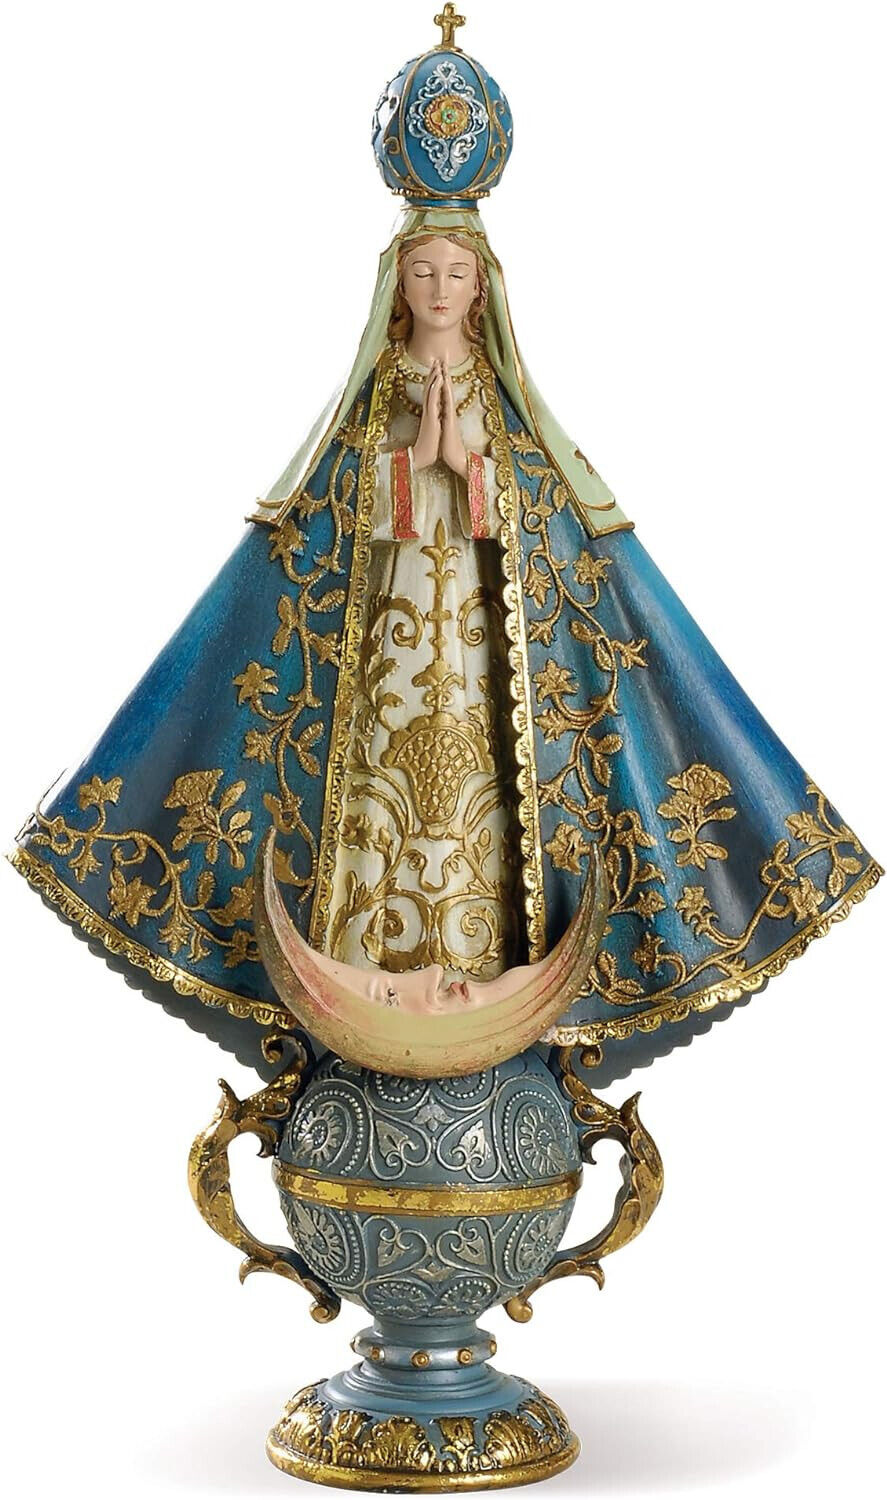 14 Inch Our Lady of San Juan de los Lagos Figurine Statue Virgin Mary 40715